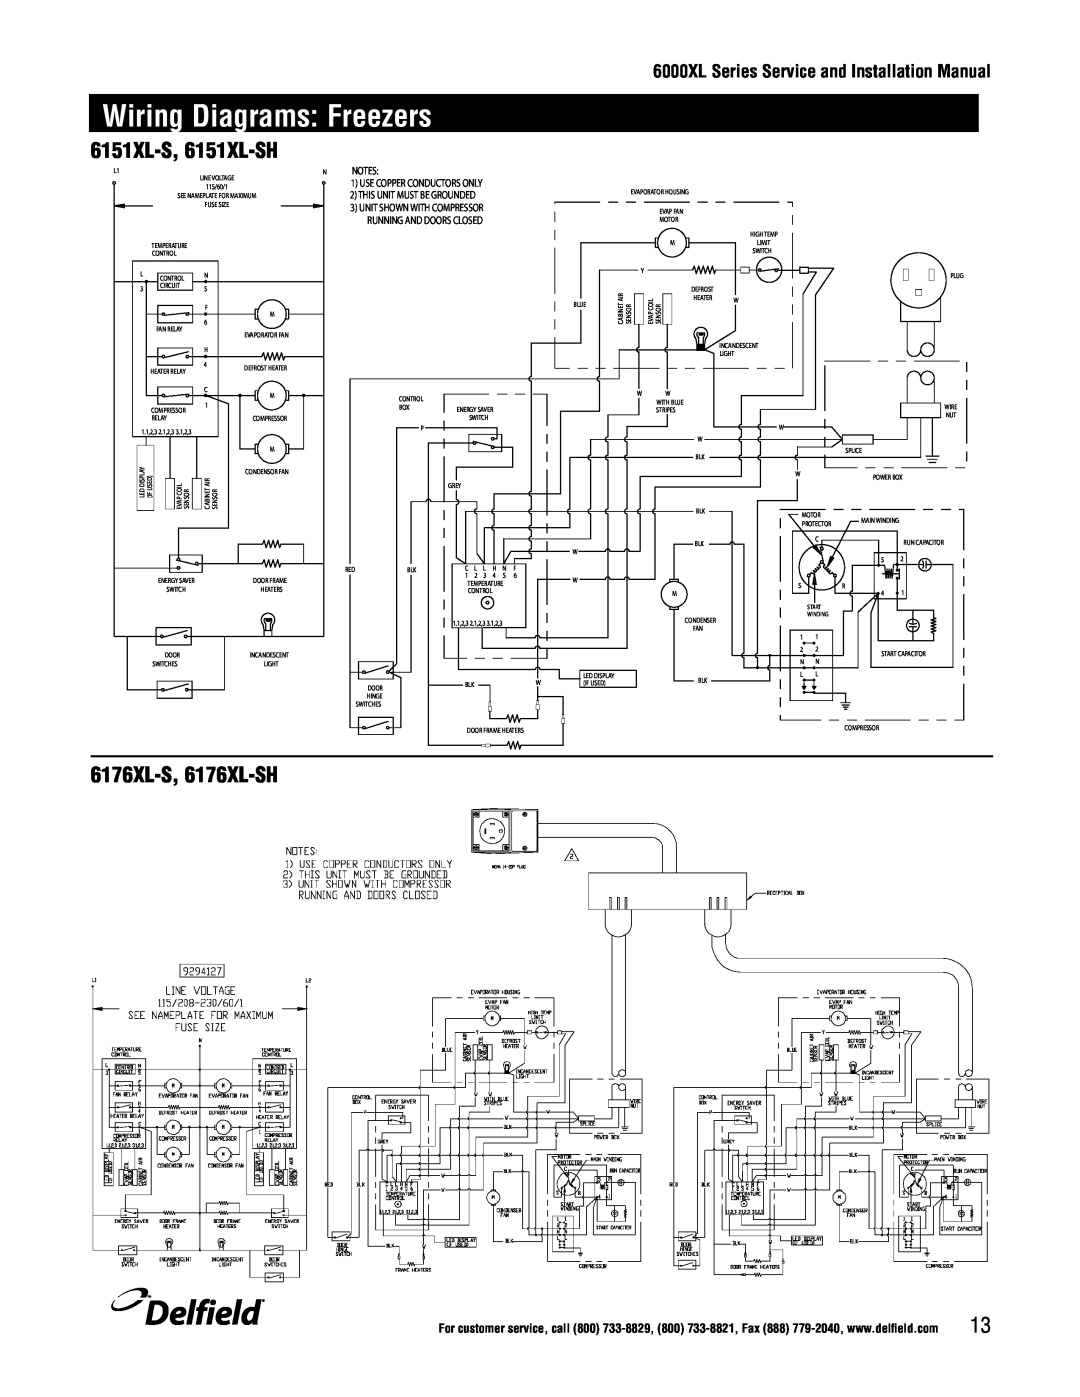 Delfield 6100XL manual Wiring Diagrams: Freezers, 6151XL-S, 6151XL-SH, 6176XL-S, 6176XL-SH, Delfield, Notes 